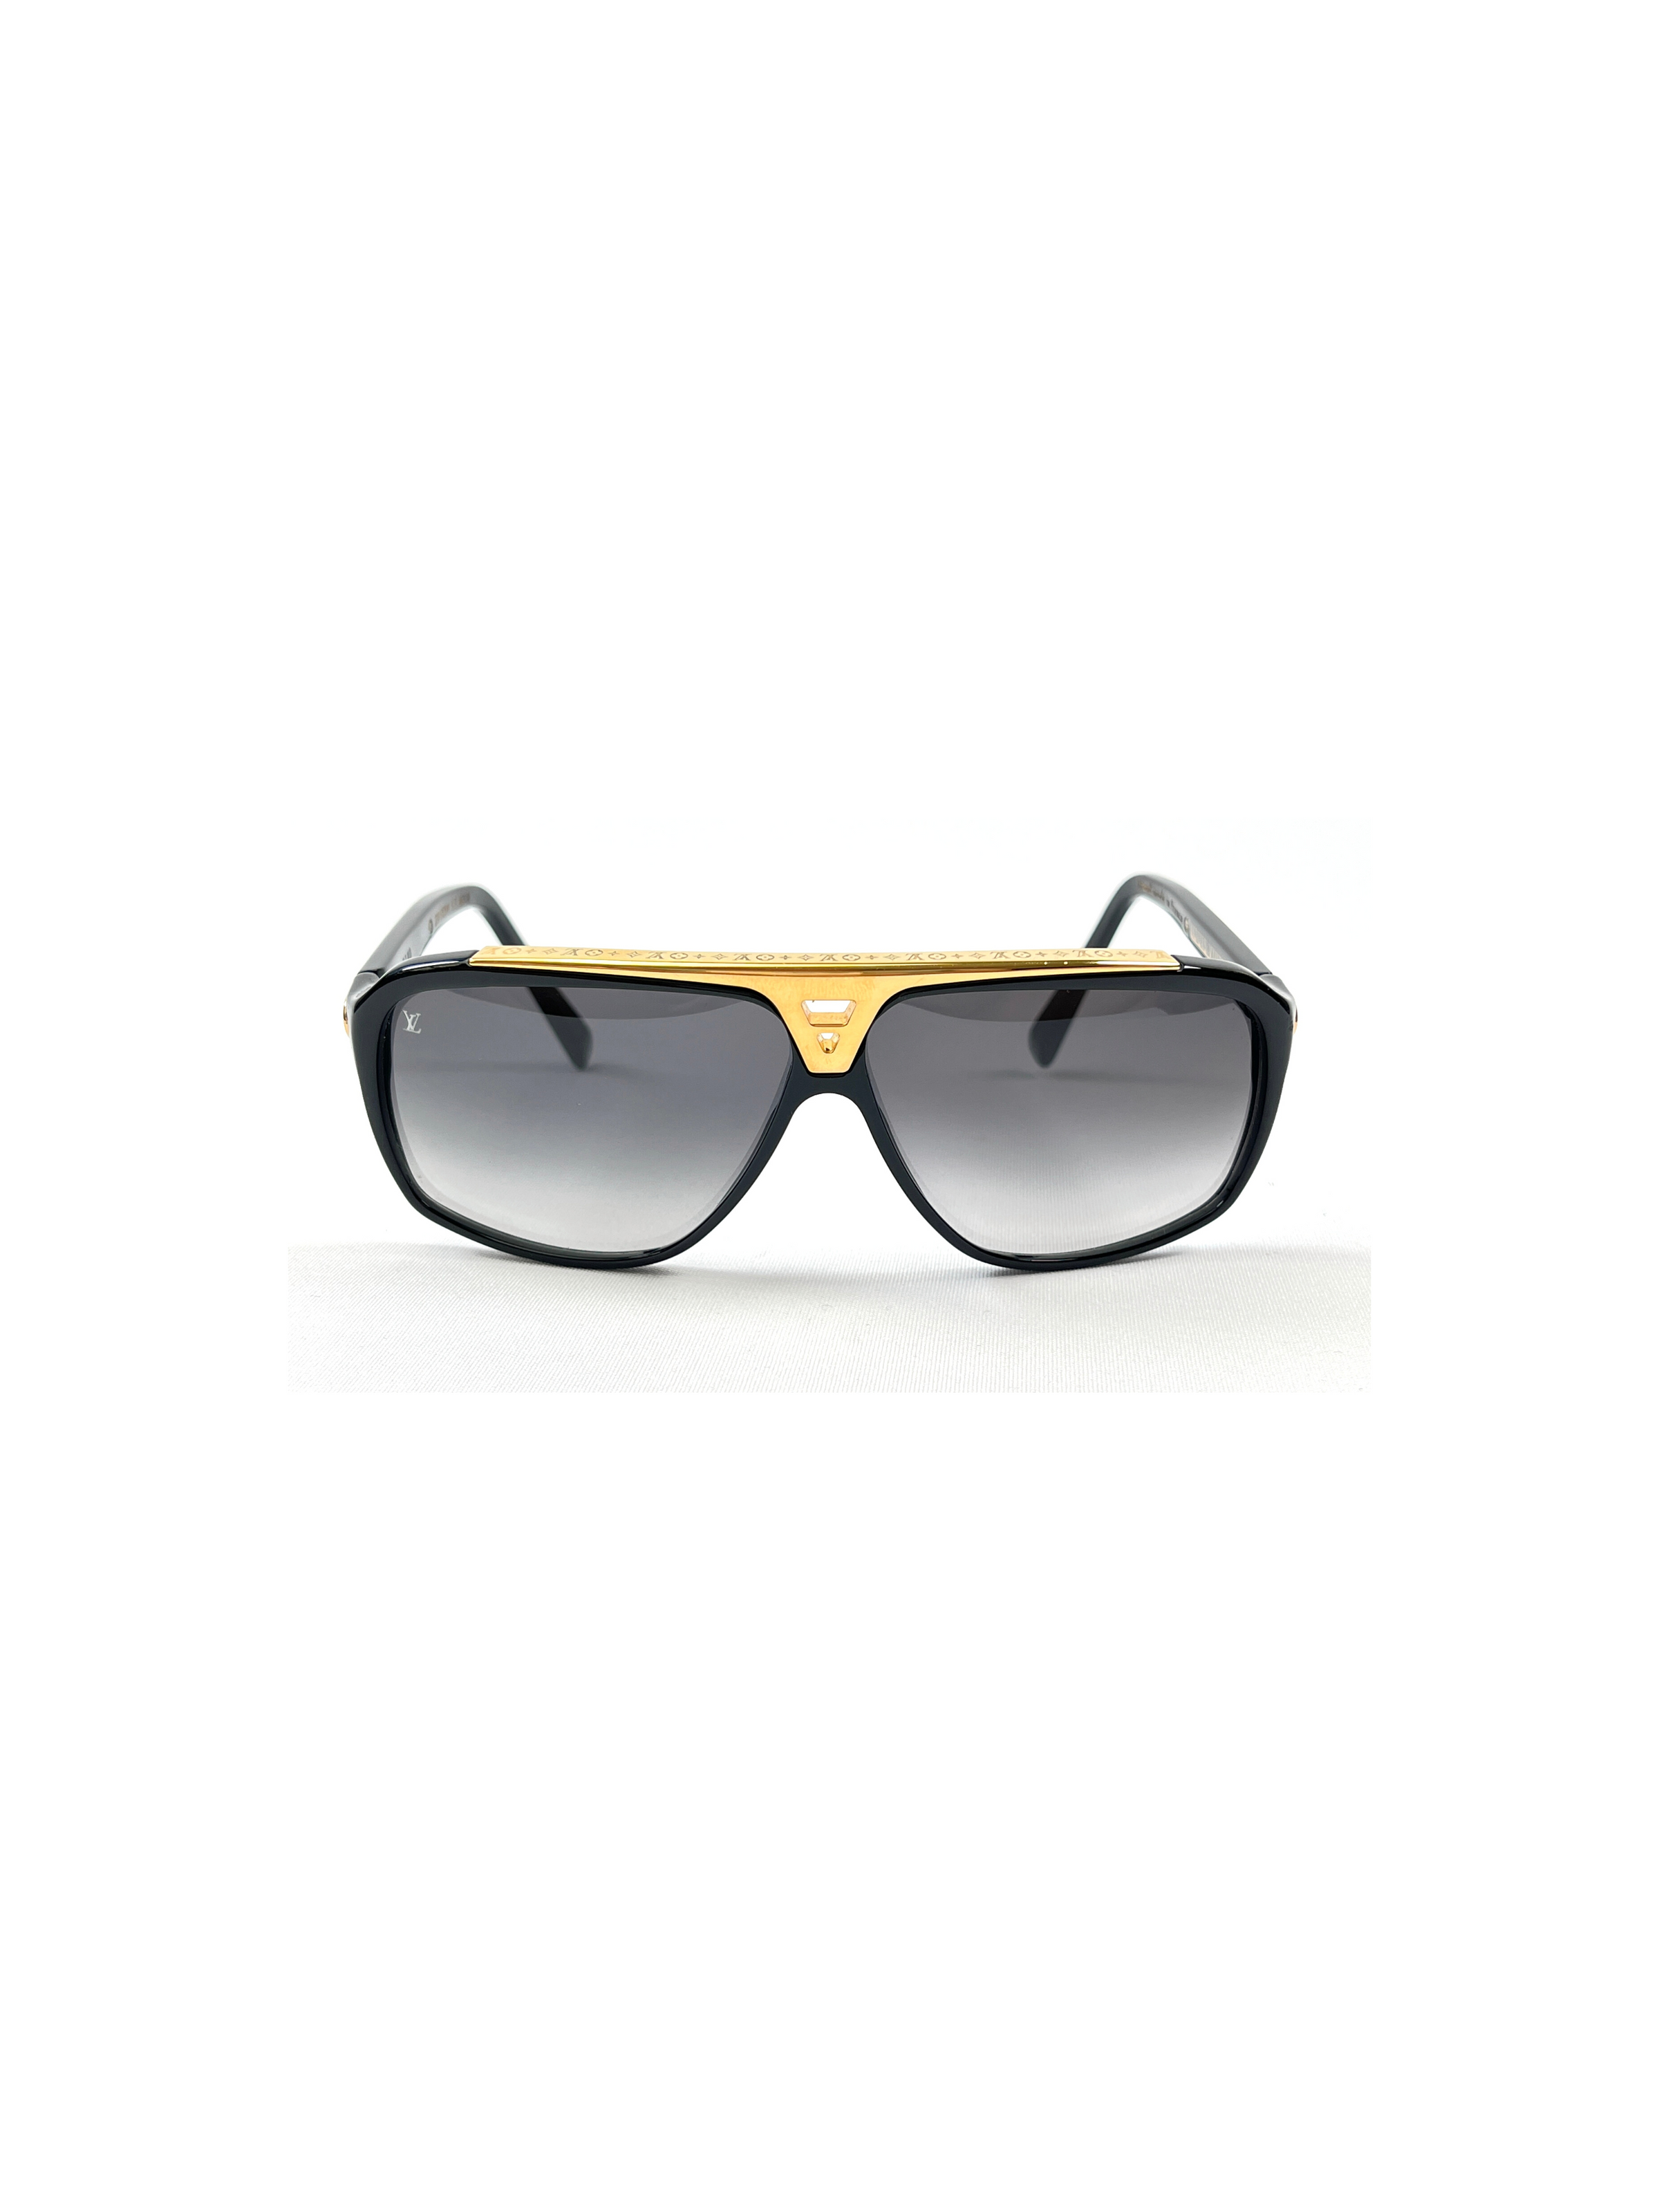 Louis Vuitton - Evidence Sunglasses Black Gold (unisex) Z0105W Authentic